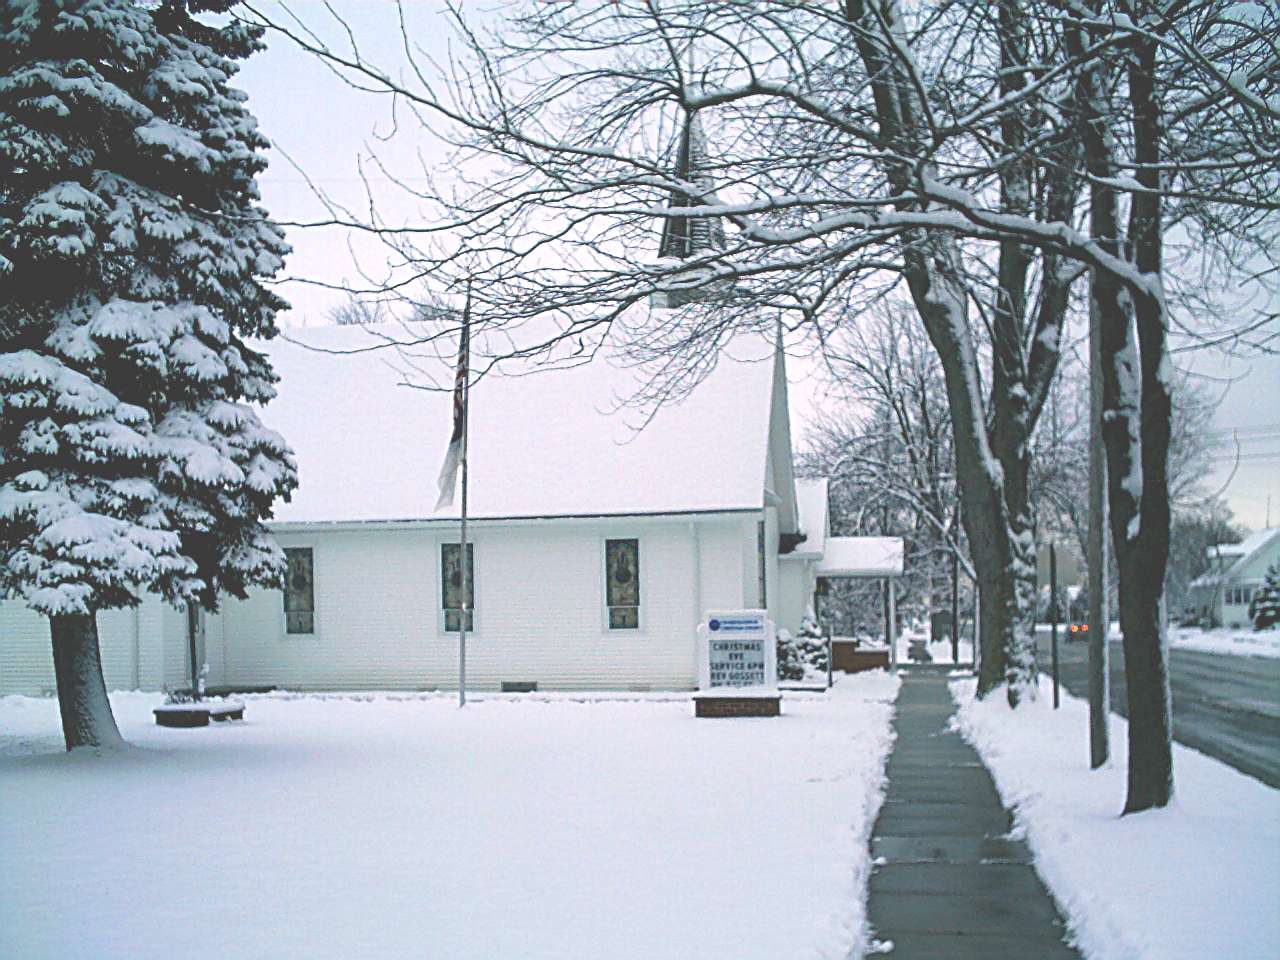 Merrill Congregational Christian Church